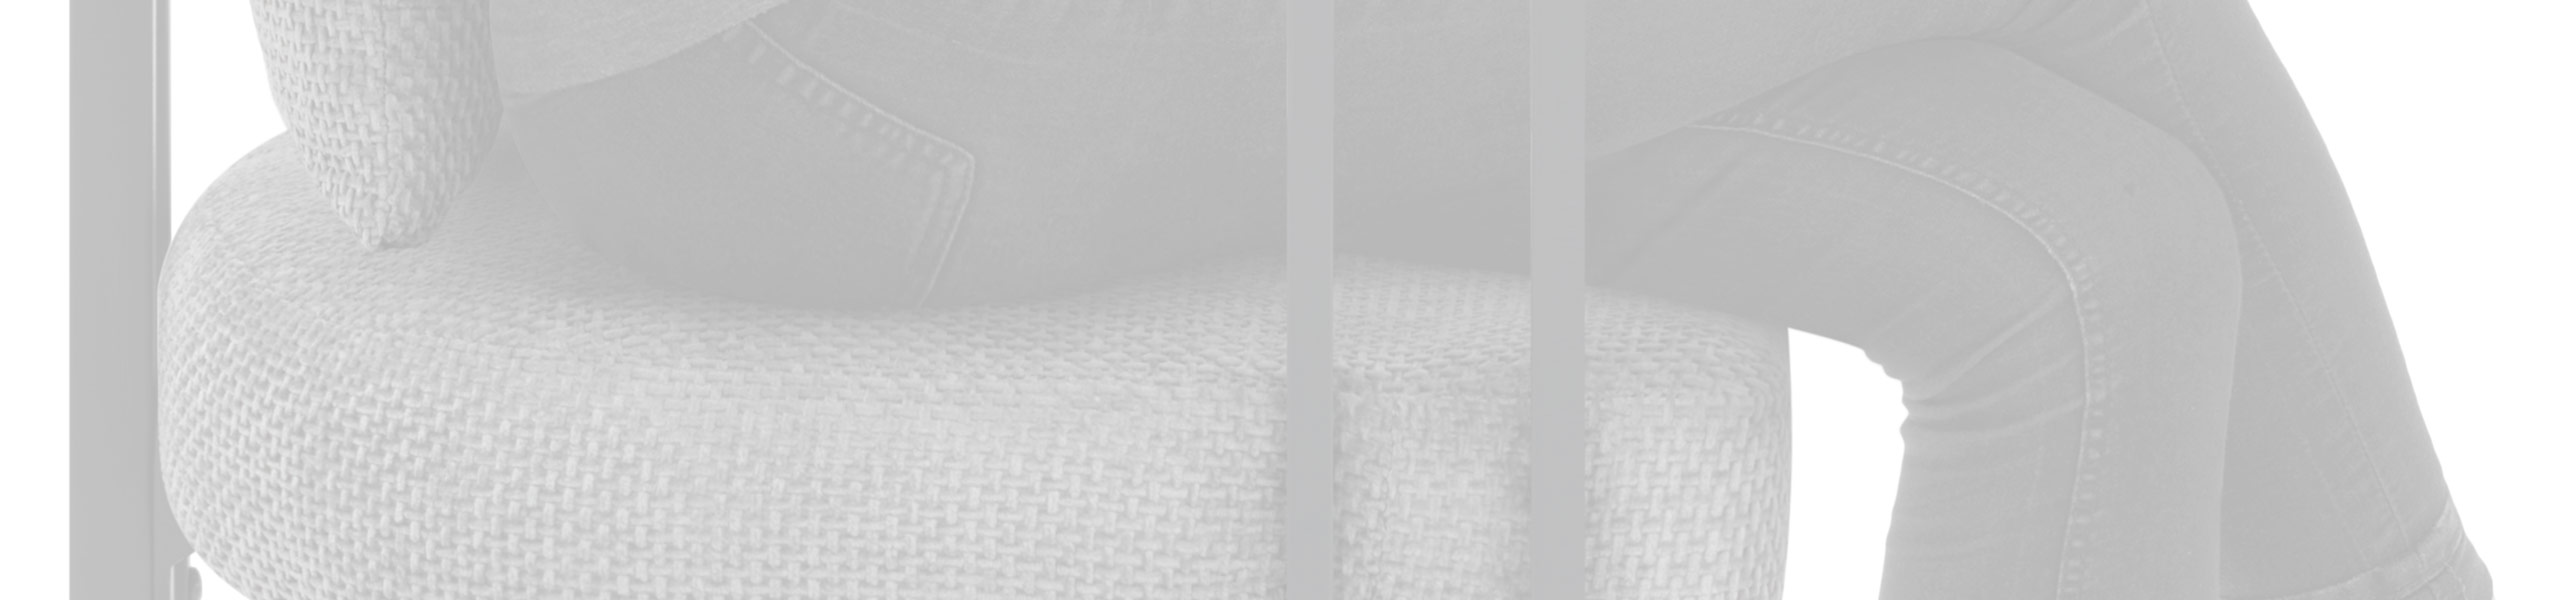 Gigi Chair & Cushion Grey Fabric Review Banner